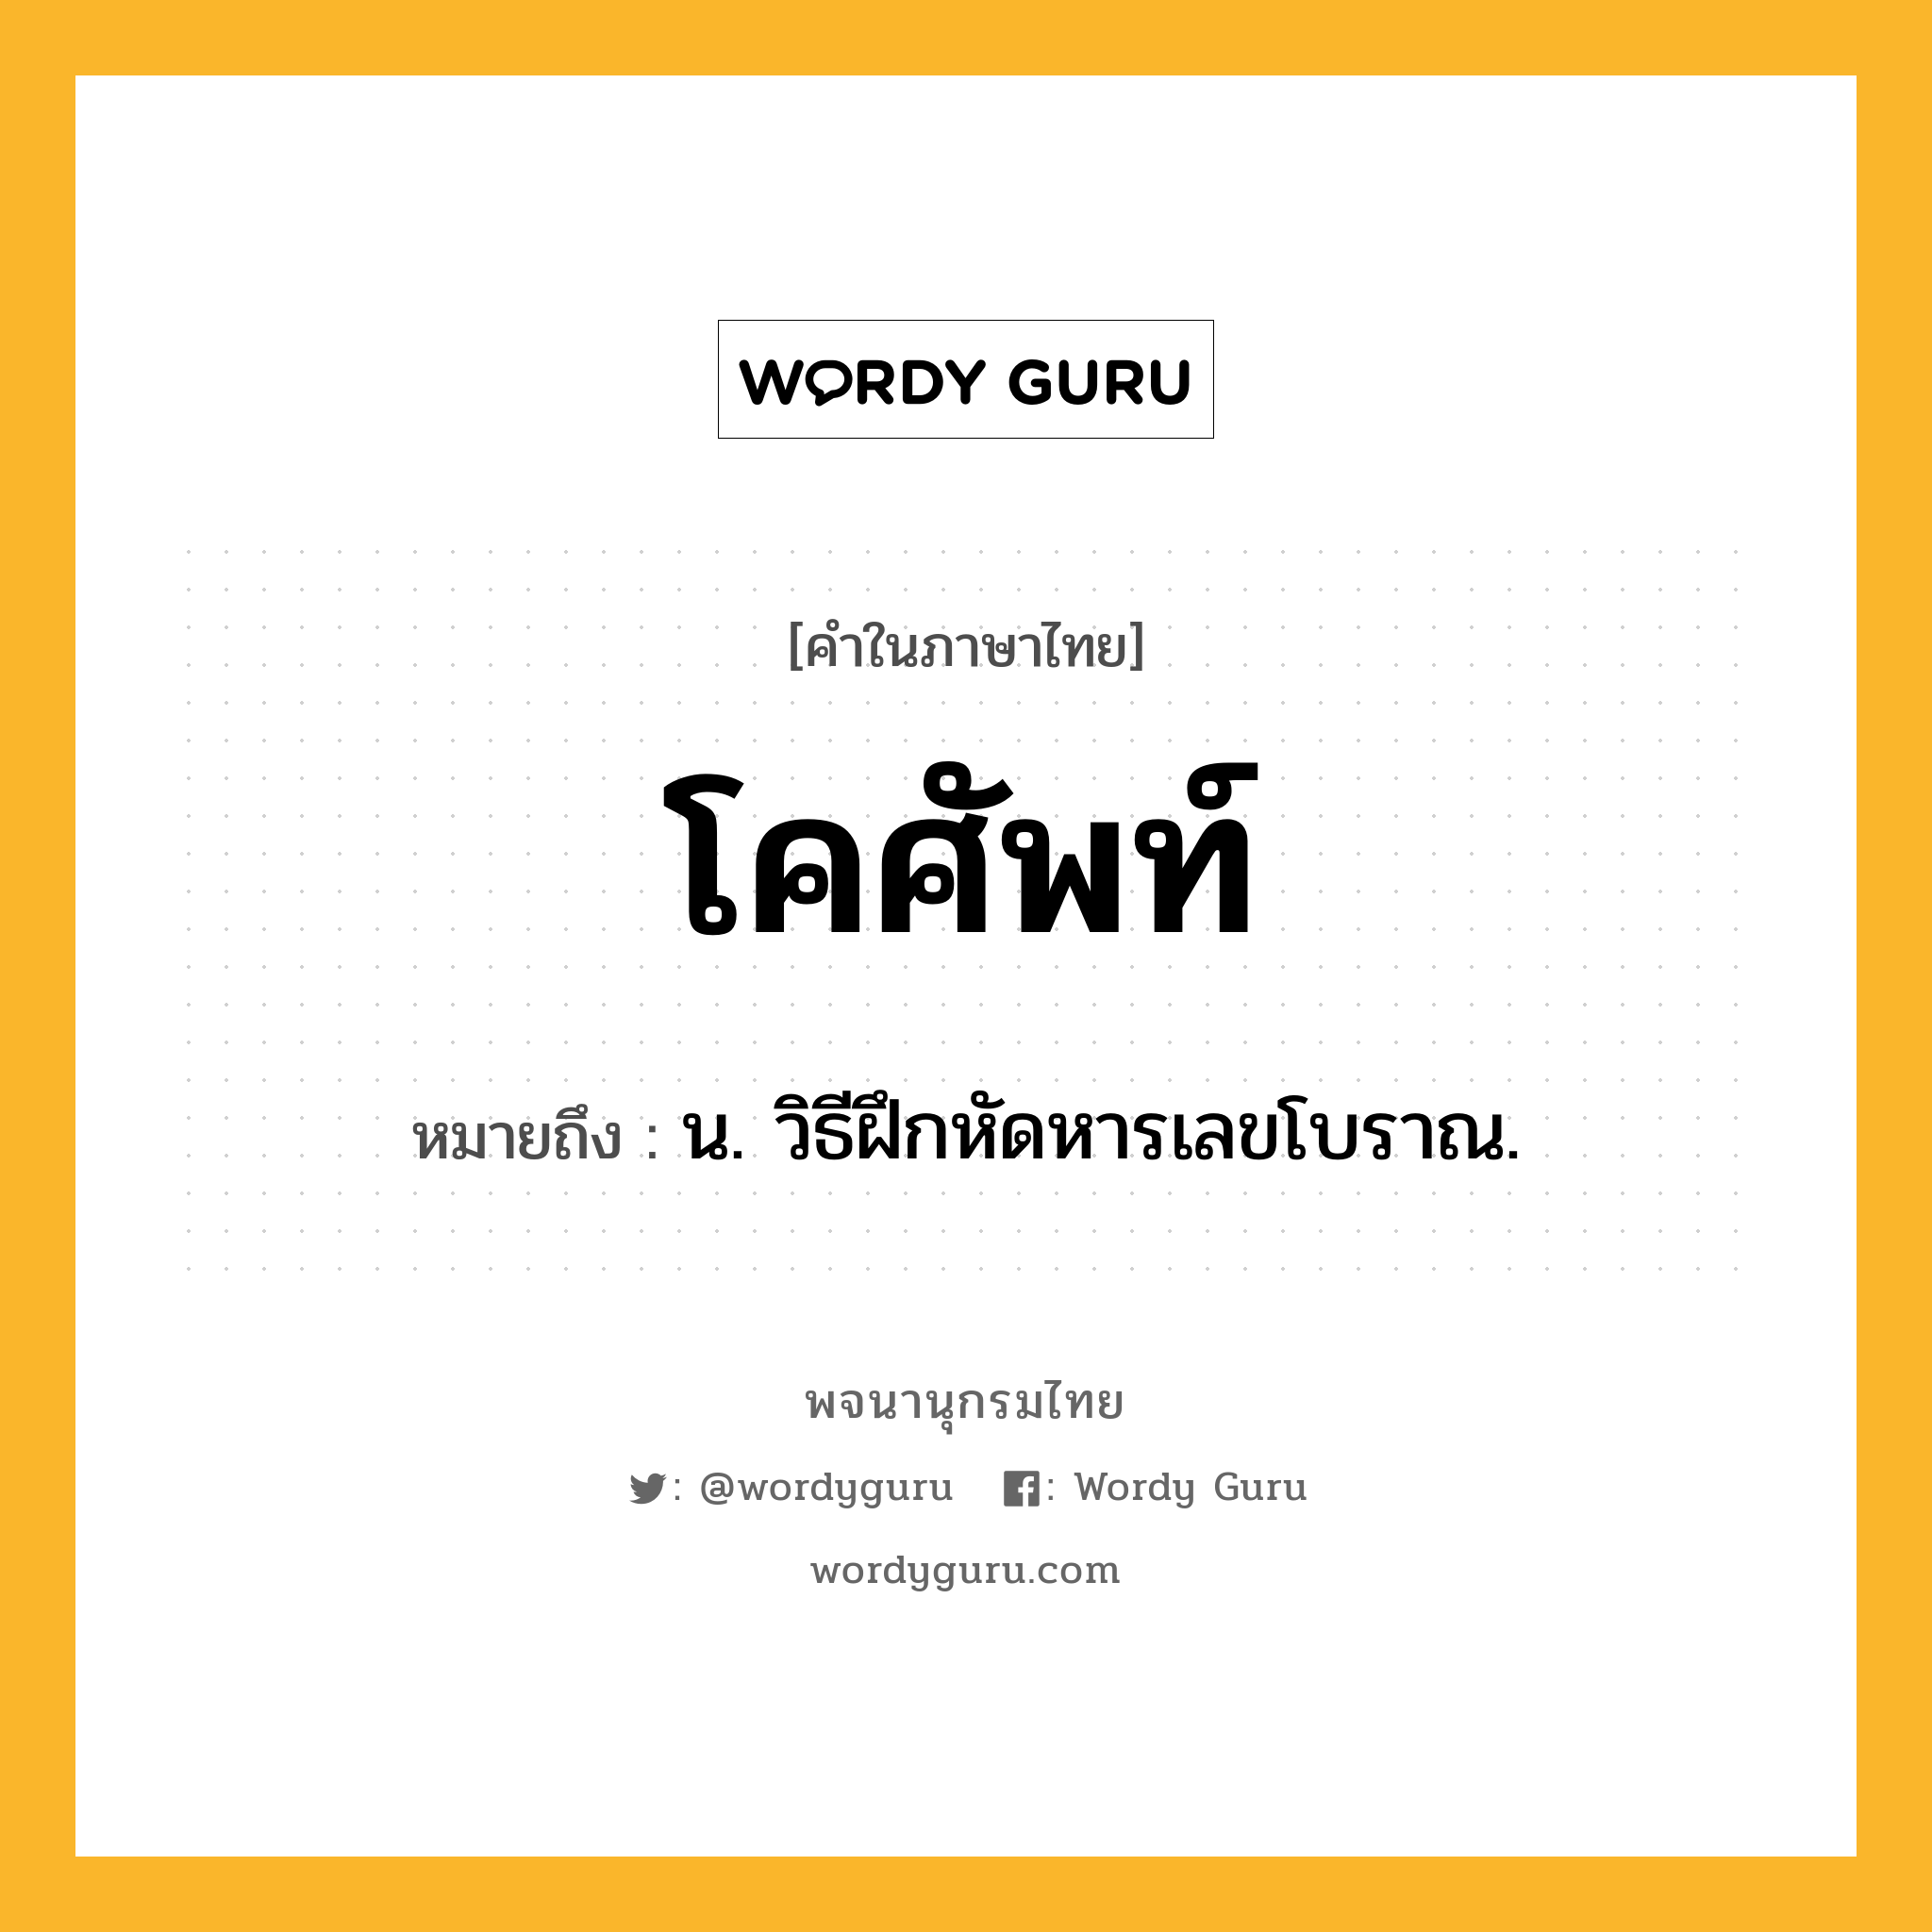 โคศัพท์ ความหมาย หมายถึงอะไร?, คำในภาษาไทย โคศัพท์ หมายถึง น. วิธีฝึกหัดหารเลขโบราณ.